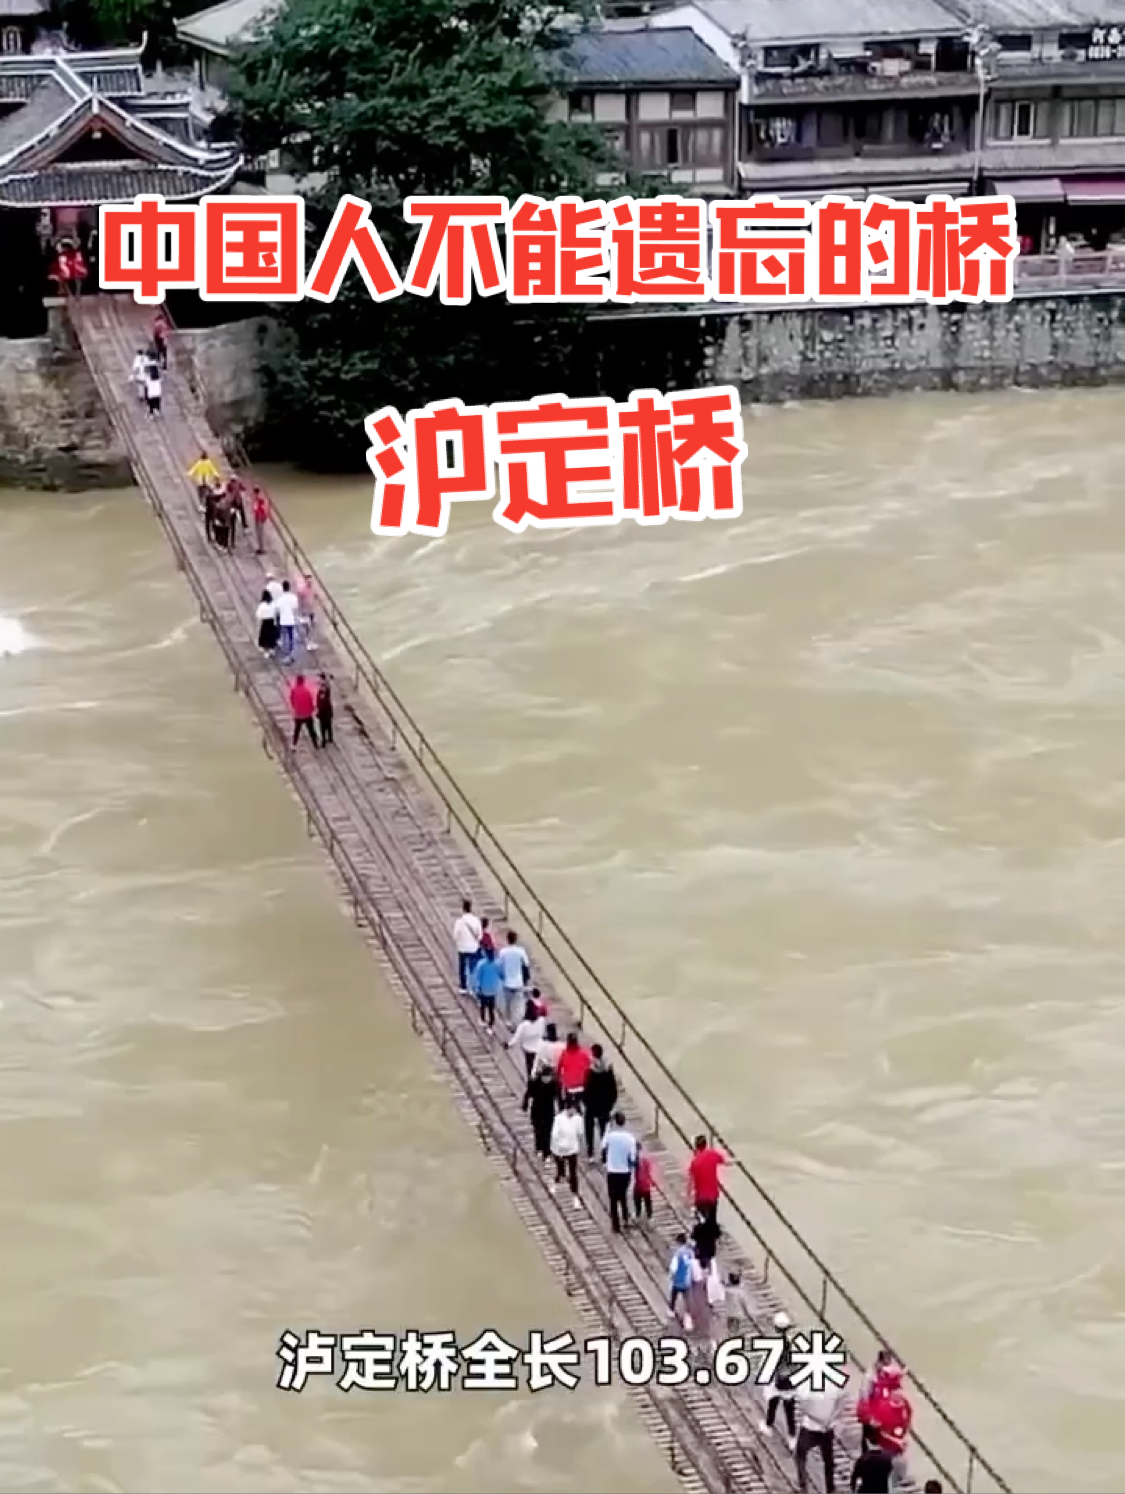 #不能遗忘的桥 #沪定桥 #历史建筑 #旅行推荐官 #必去打卡之地